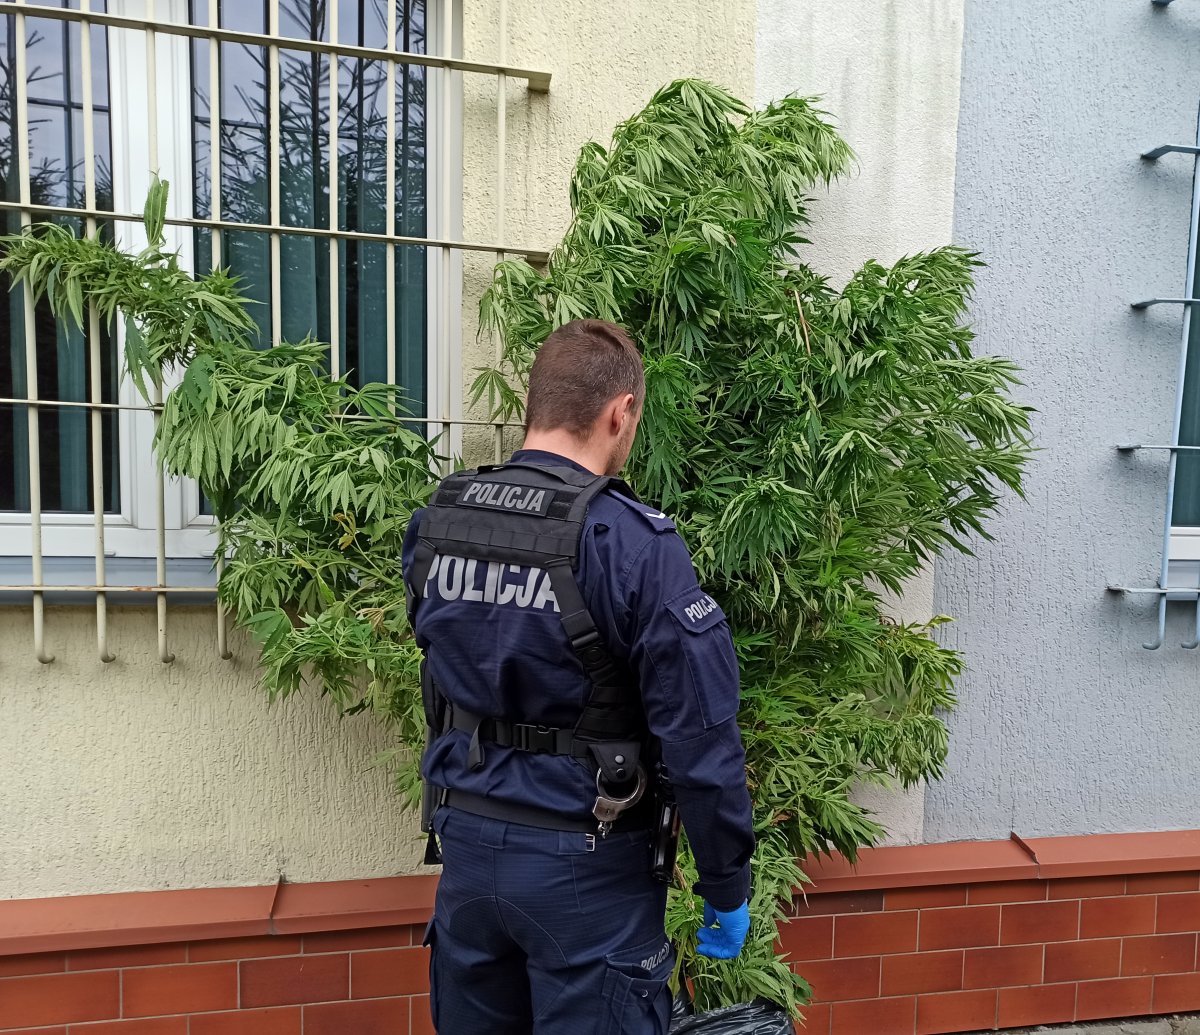 zabezpieczone krzewy marihuany przy nich policjant